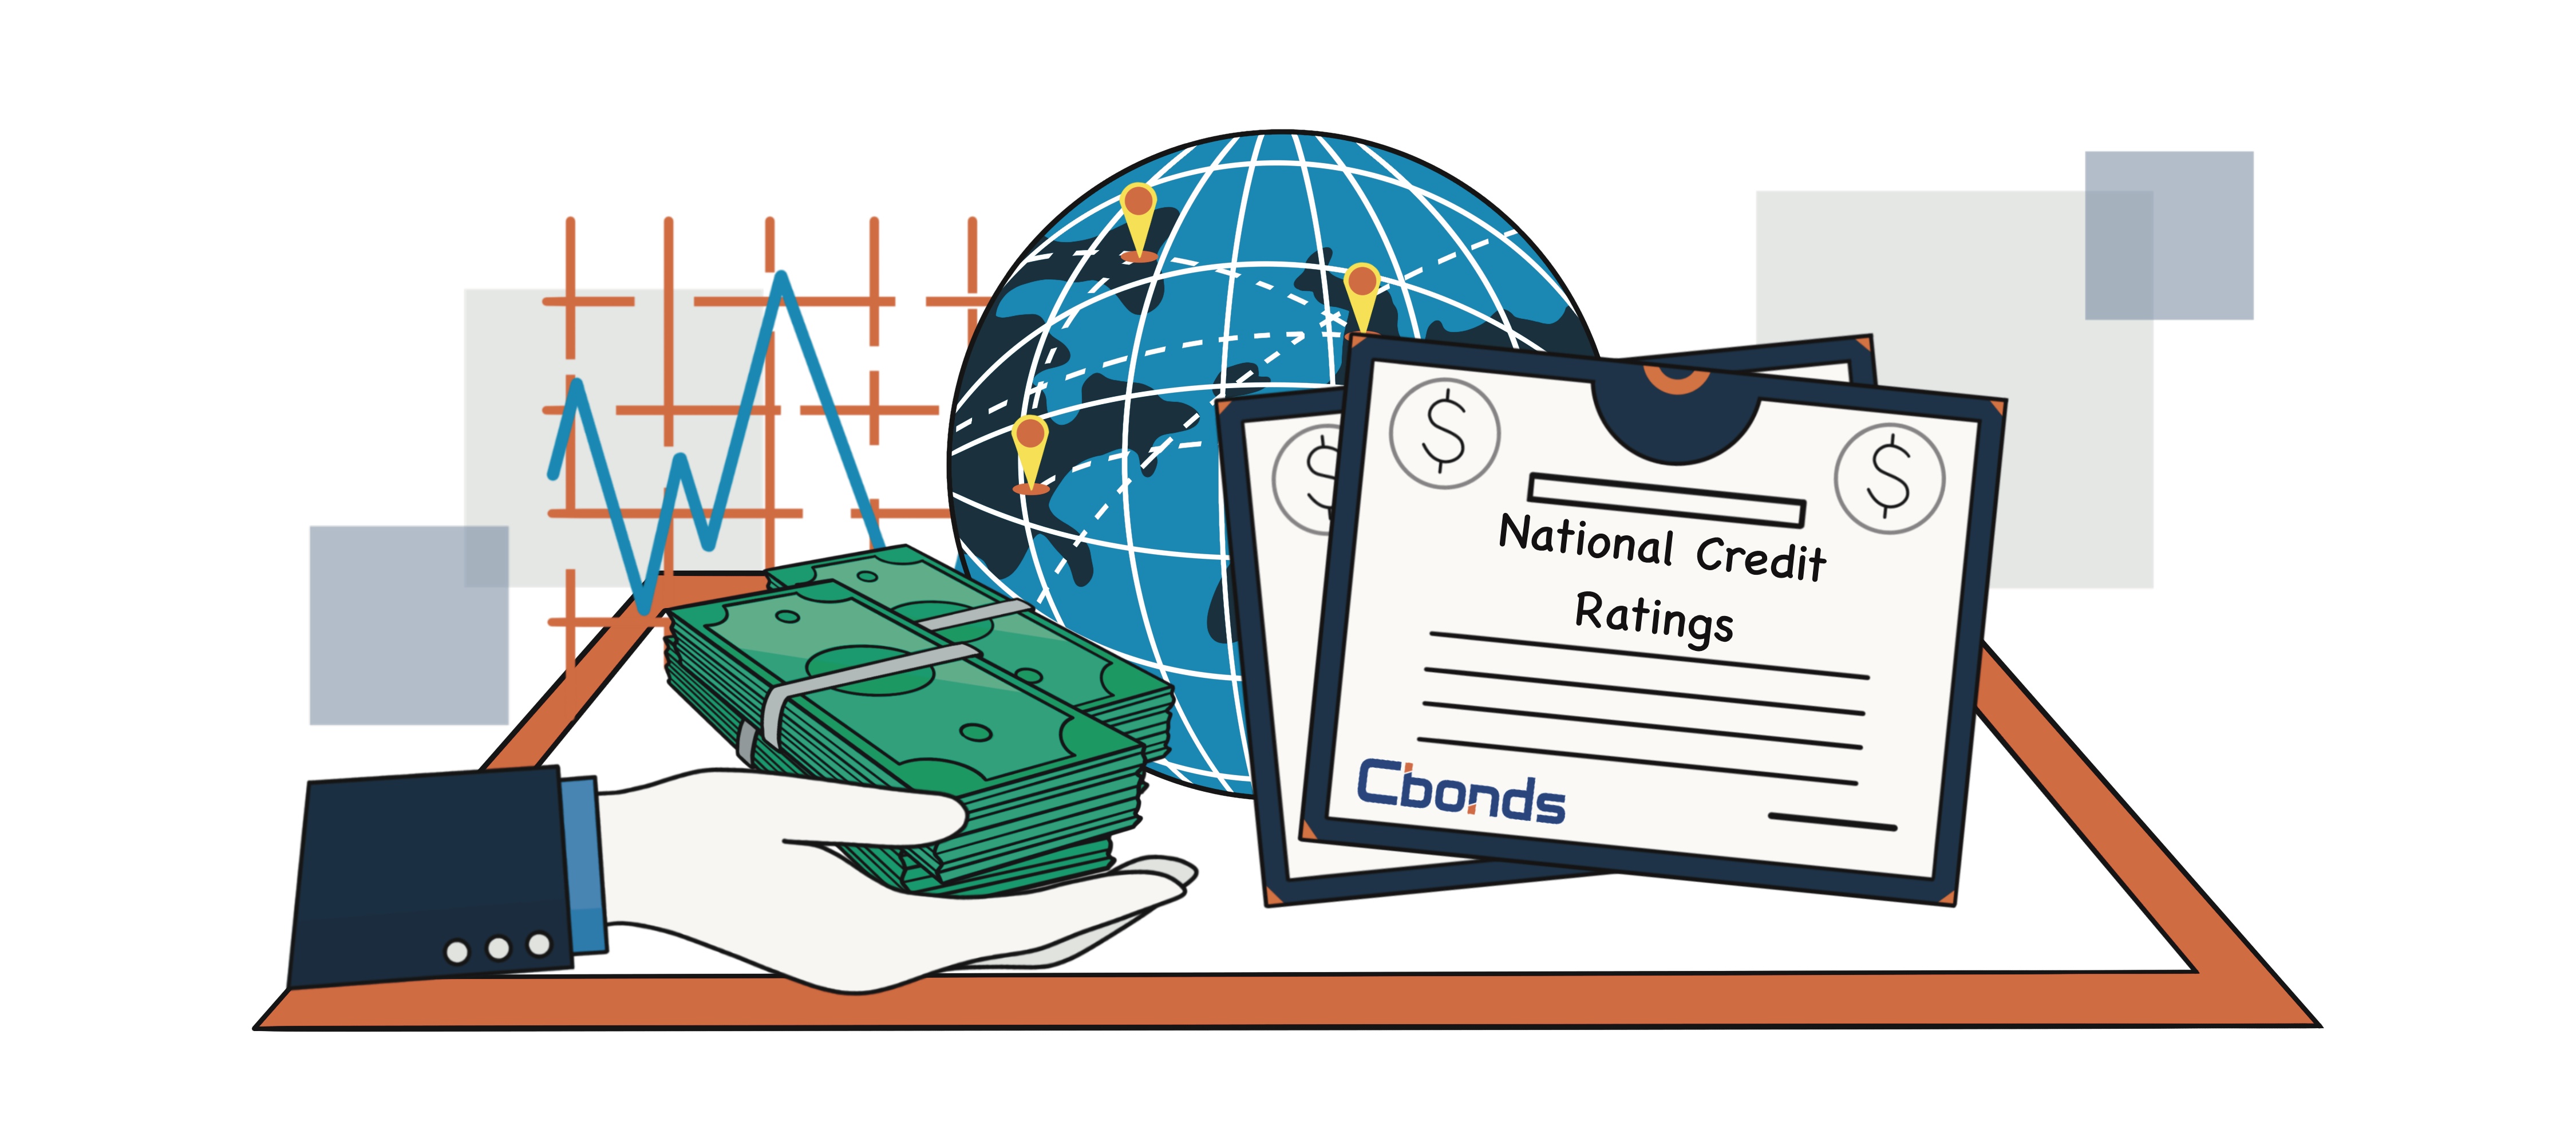 National Credit Ratings